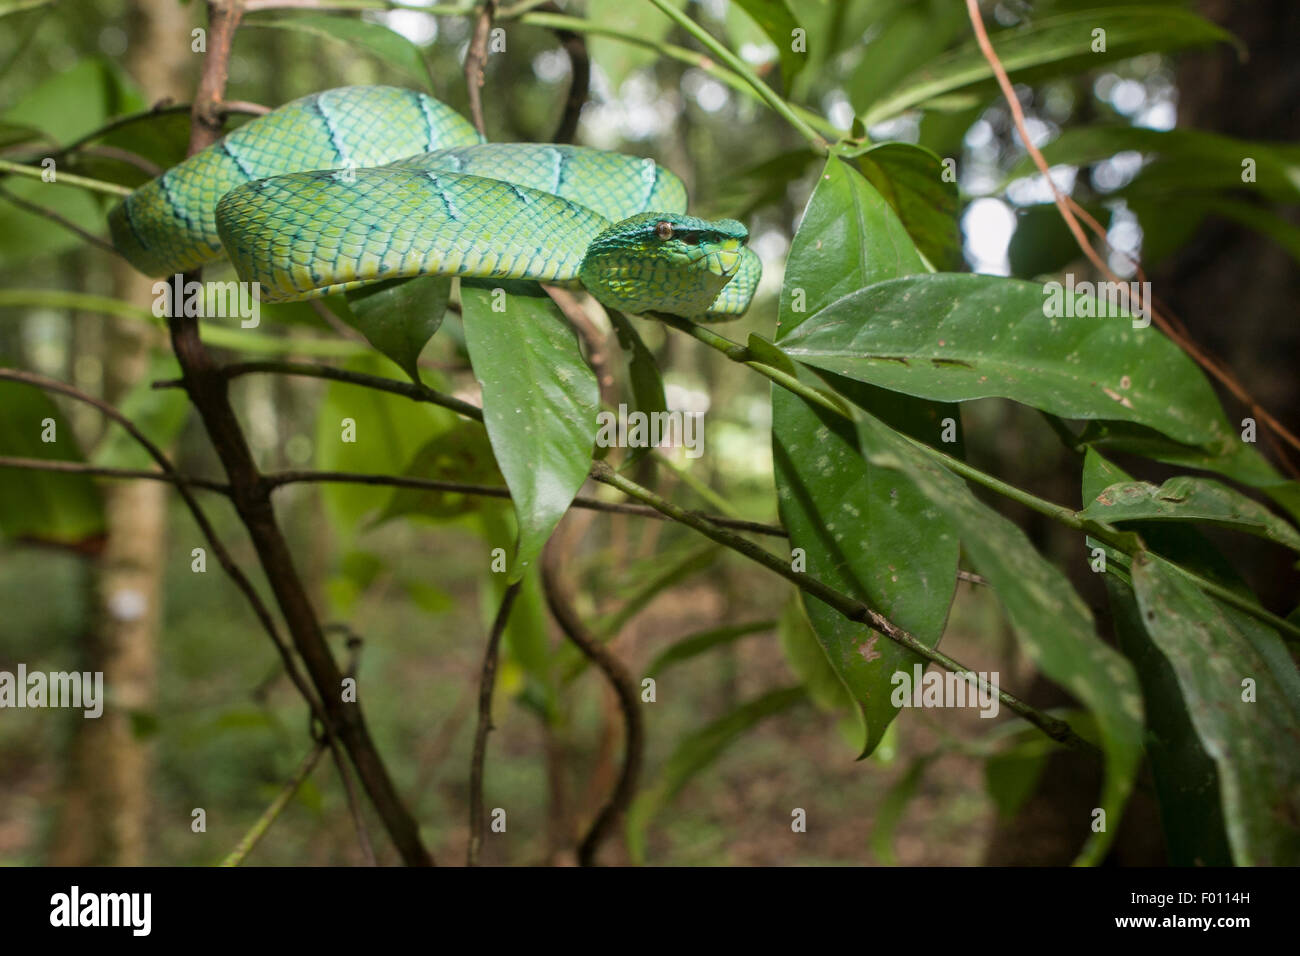 Wagler's pit viper (Tropidolaemus wagleri) en la rama de un árbol. Foto de stock